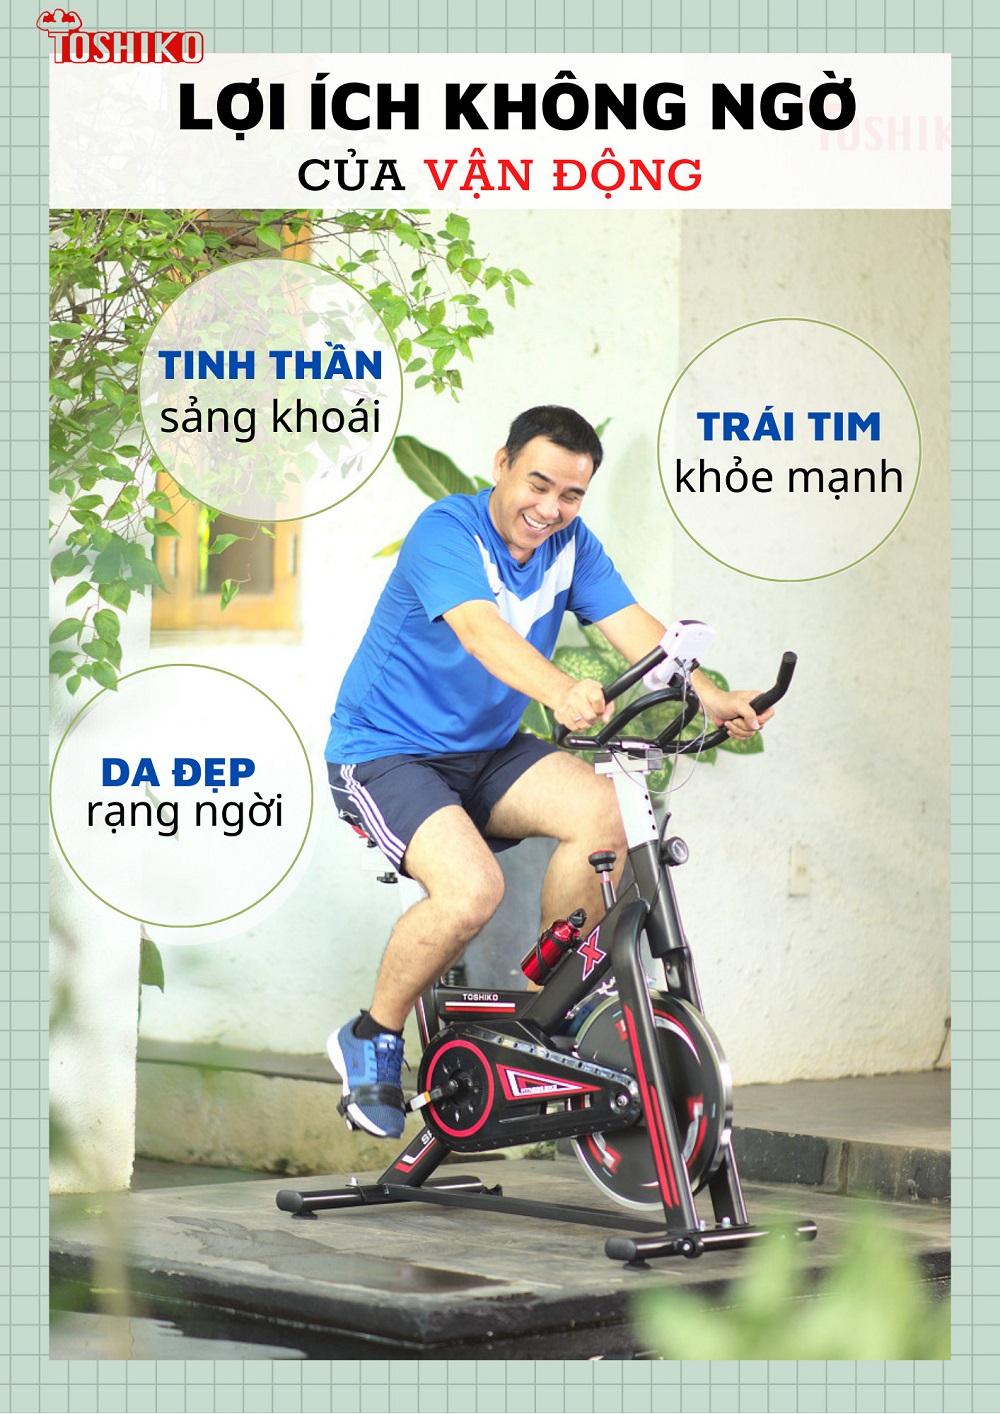 Lợi ích khi dùng xe đạp tập thể dục tại nhà giá rẻ